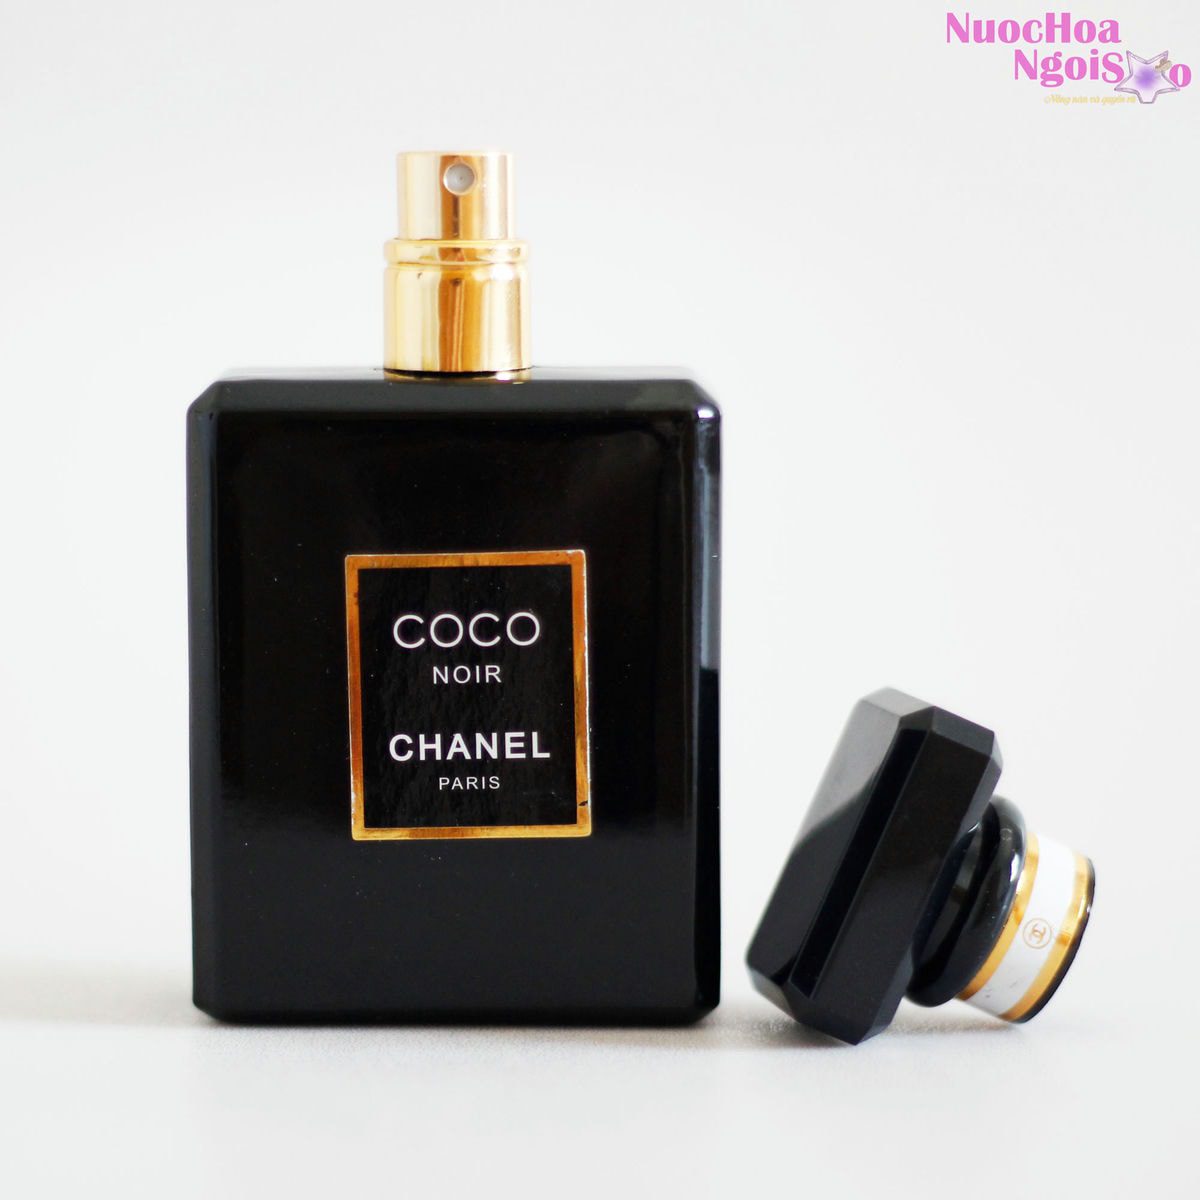 Chia Sẻ 75 Về Coco Chanel Noir Mới Cập Nhật